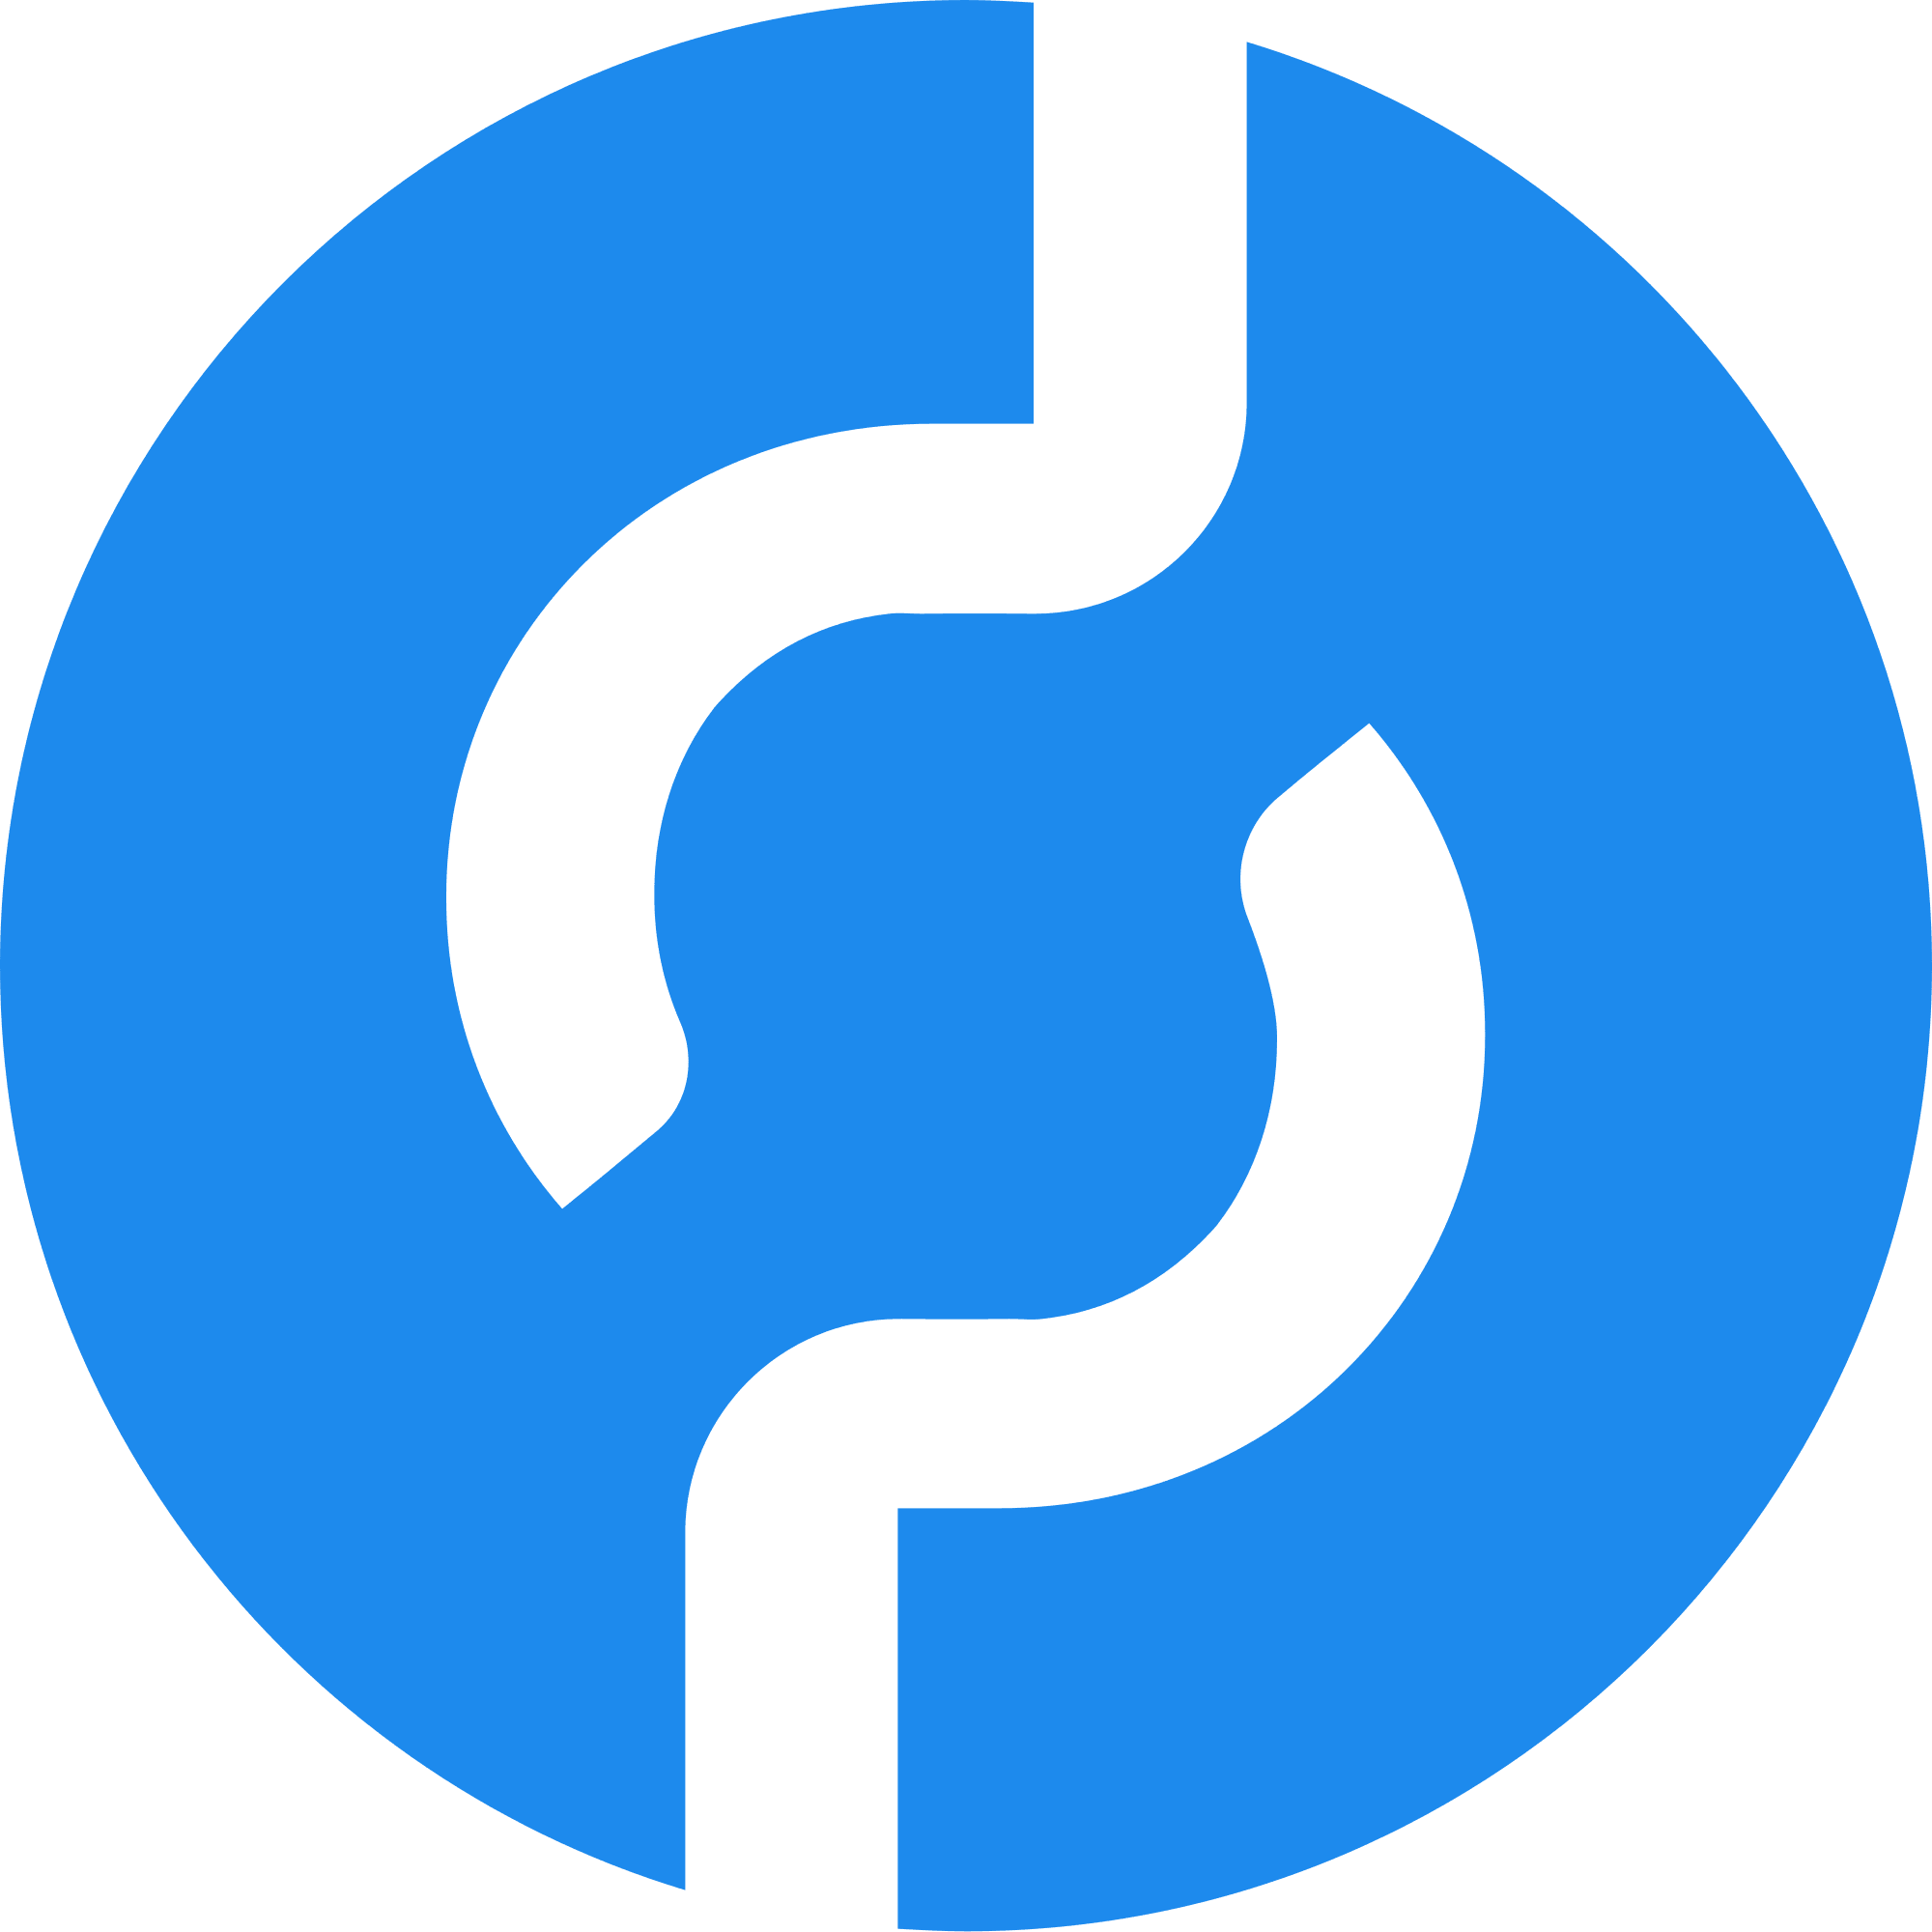 Pocket Network logo in png format